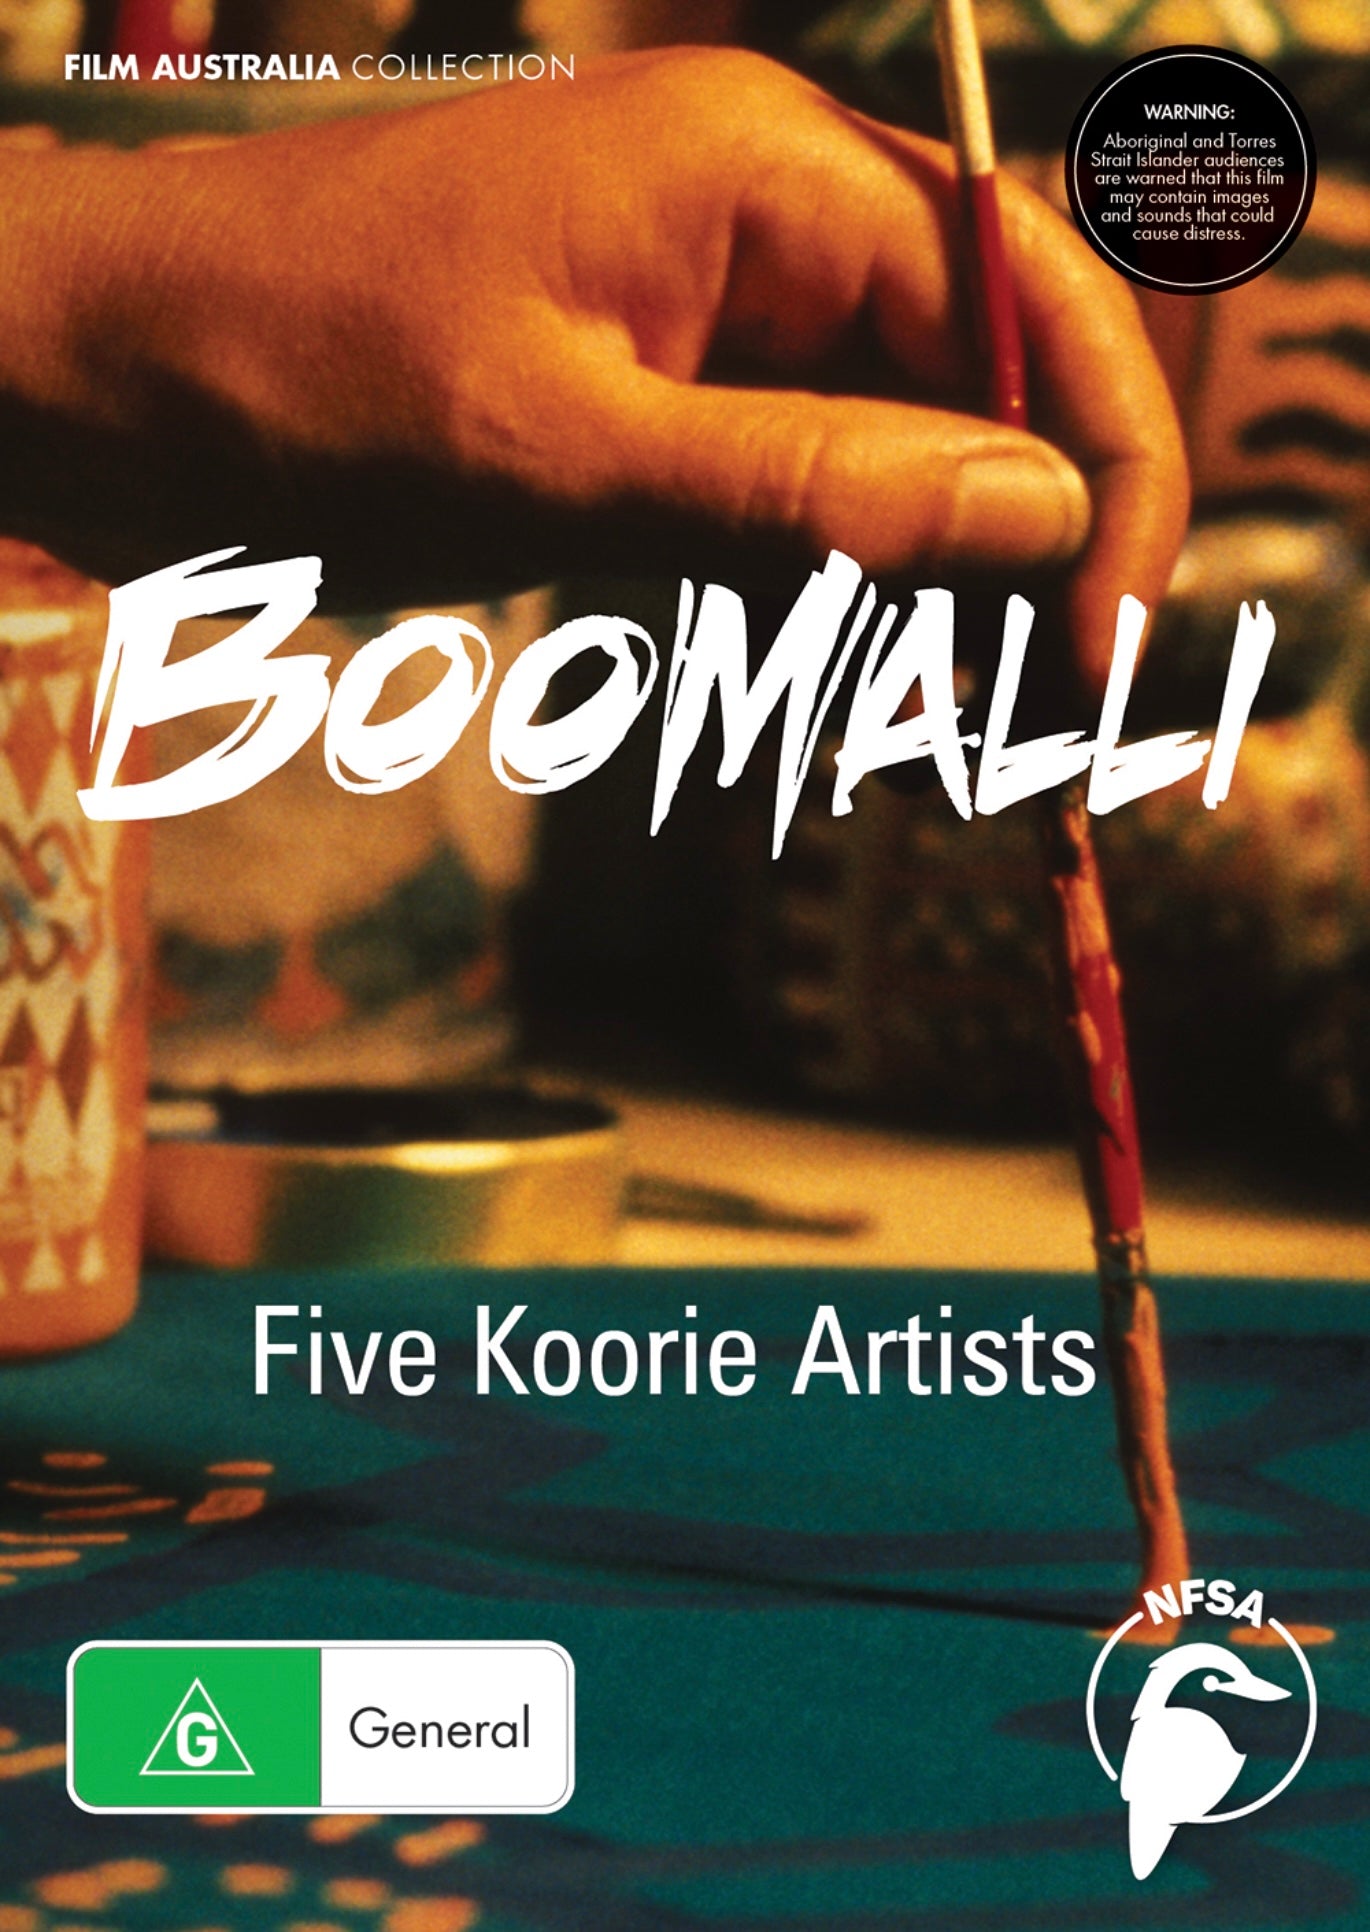 Boomalli: Five Koorie Artists DVD